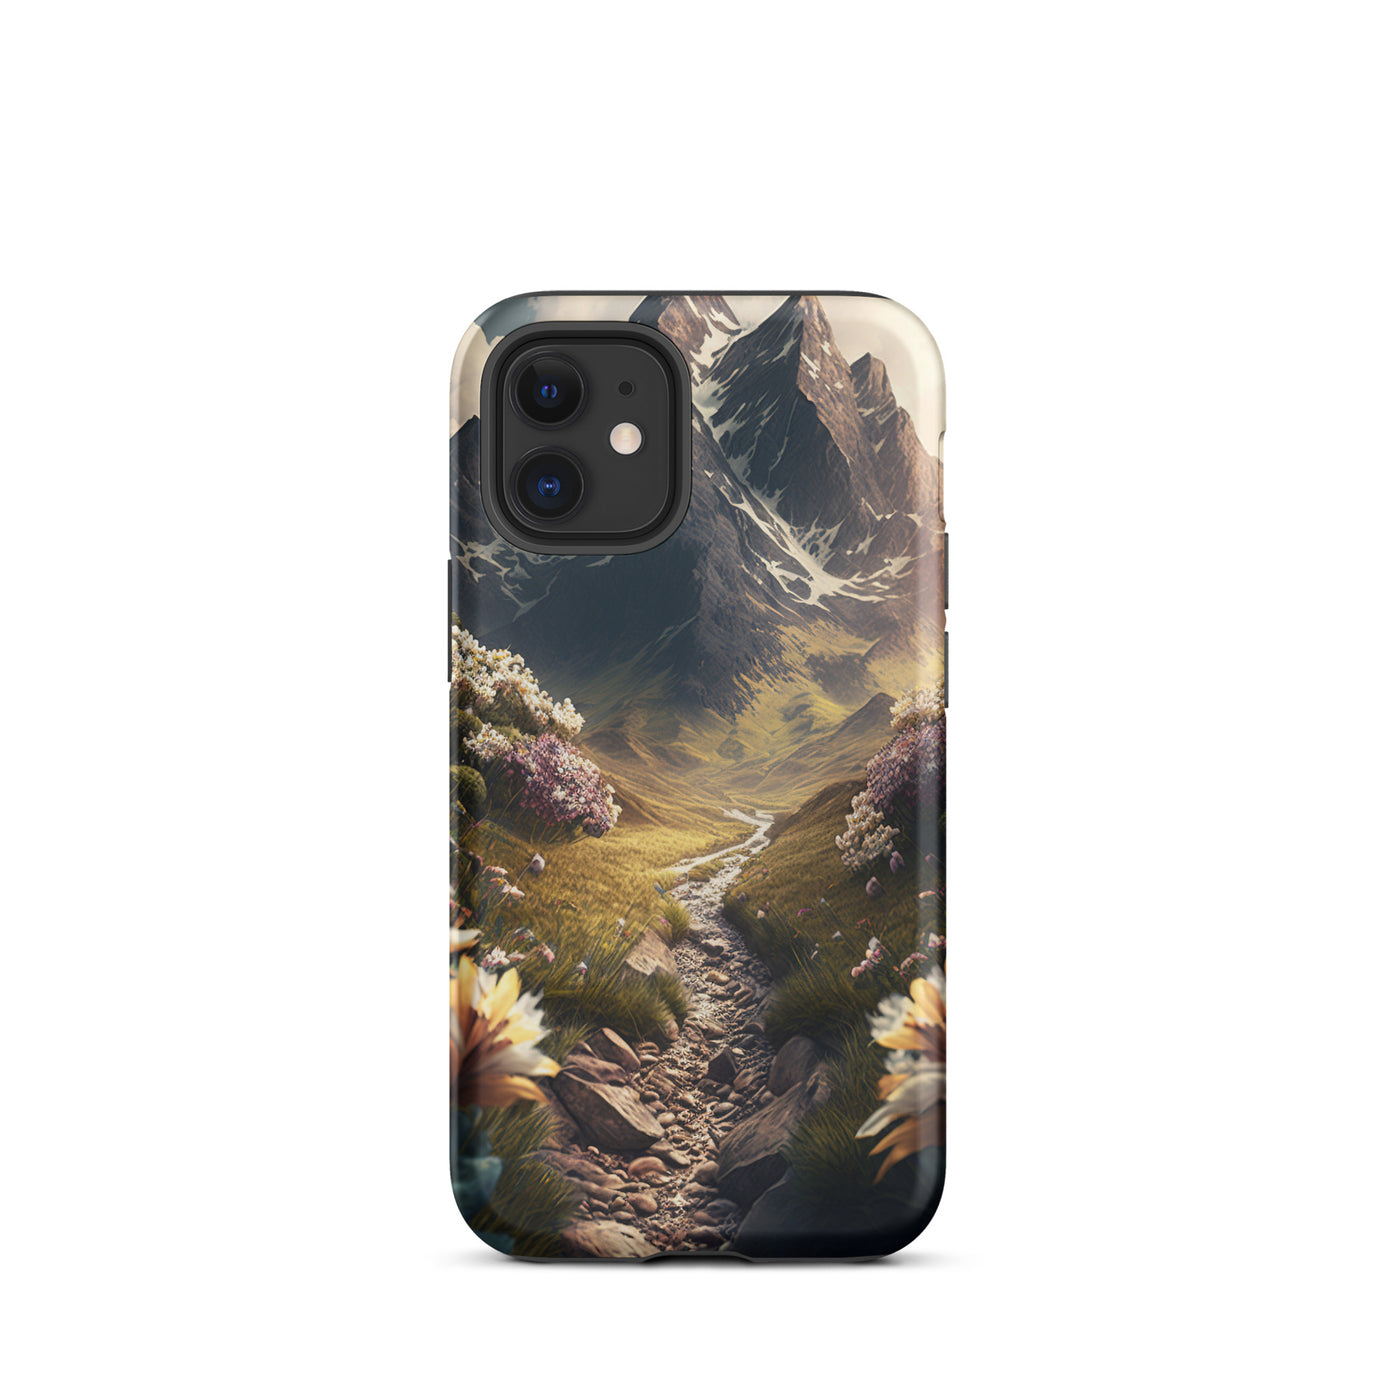 Epischer Berg, steiniger Weg und Blumen - Realistische Malerei - iPhone Schutzhülle (robust) berge xxx iPhone 12 mini